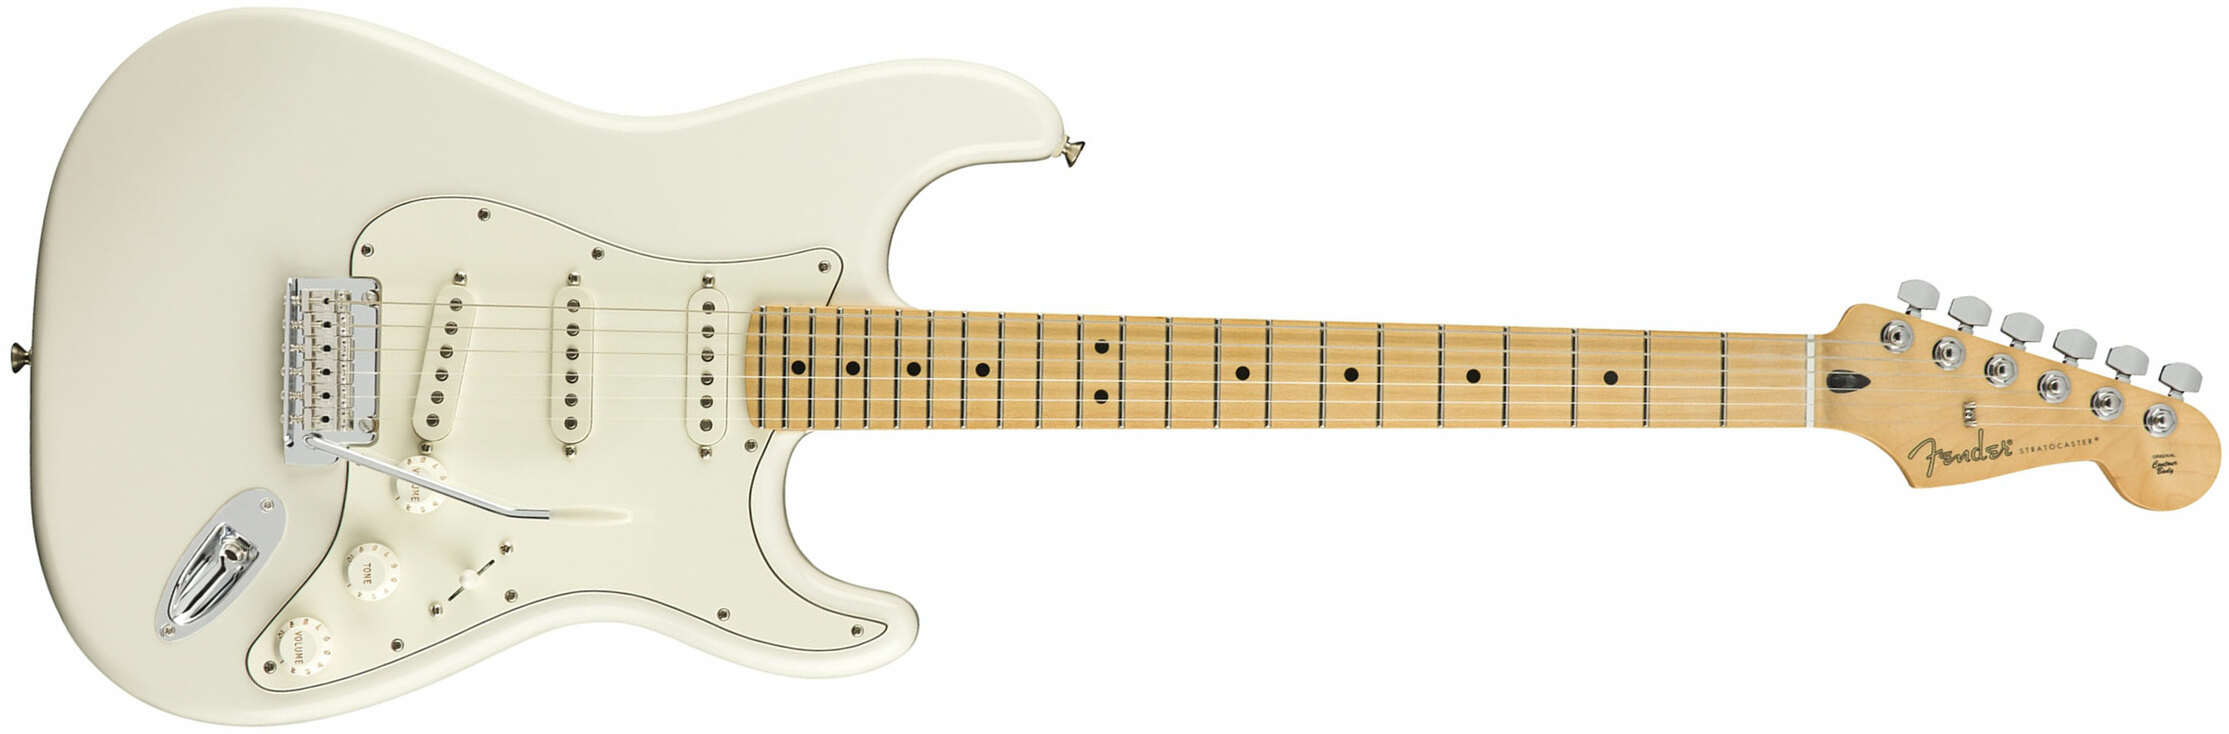 Fender Strat Player Mex Sss Mn - Polar White - Elektrische gitaar in Str-vorm - Main picture